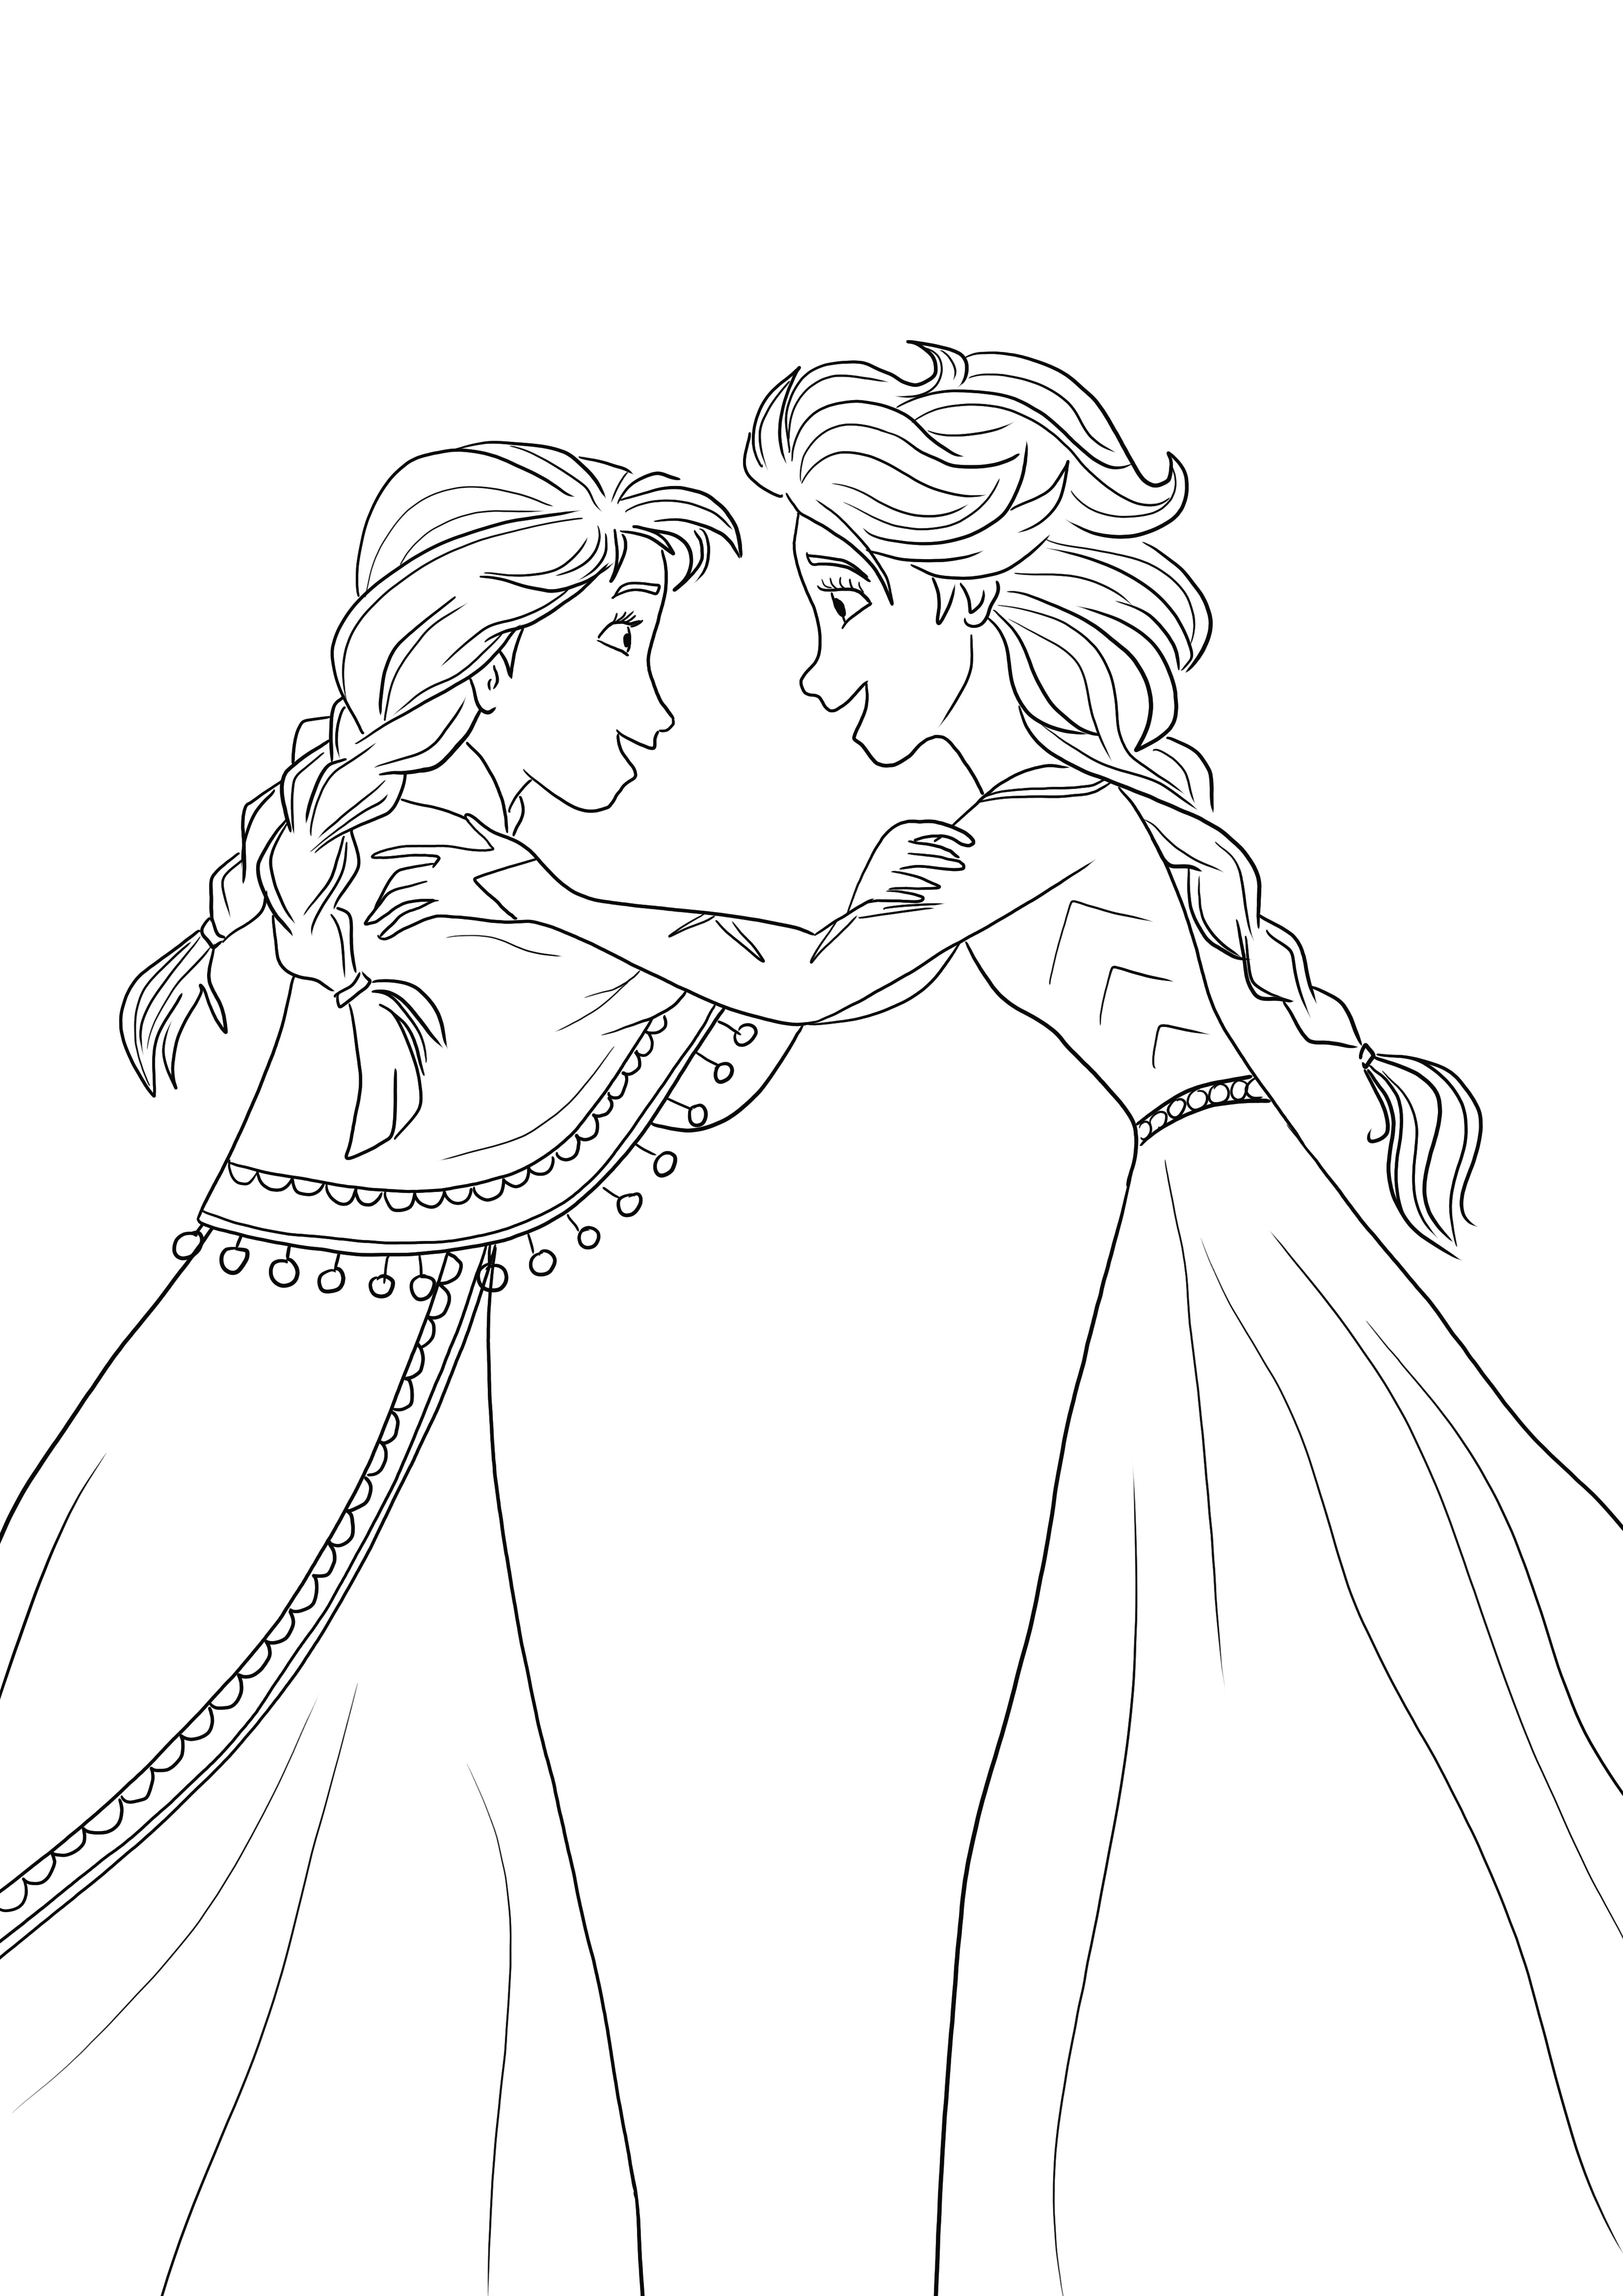 Dibujo para colorear de Anna y Elsa felices porque la maldición se rompe imprimible gratis